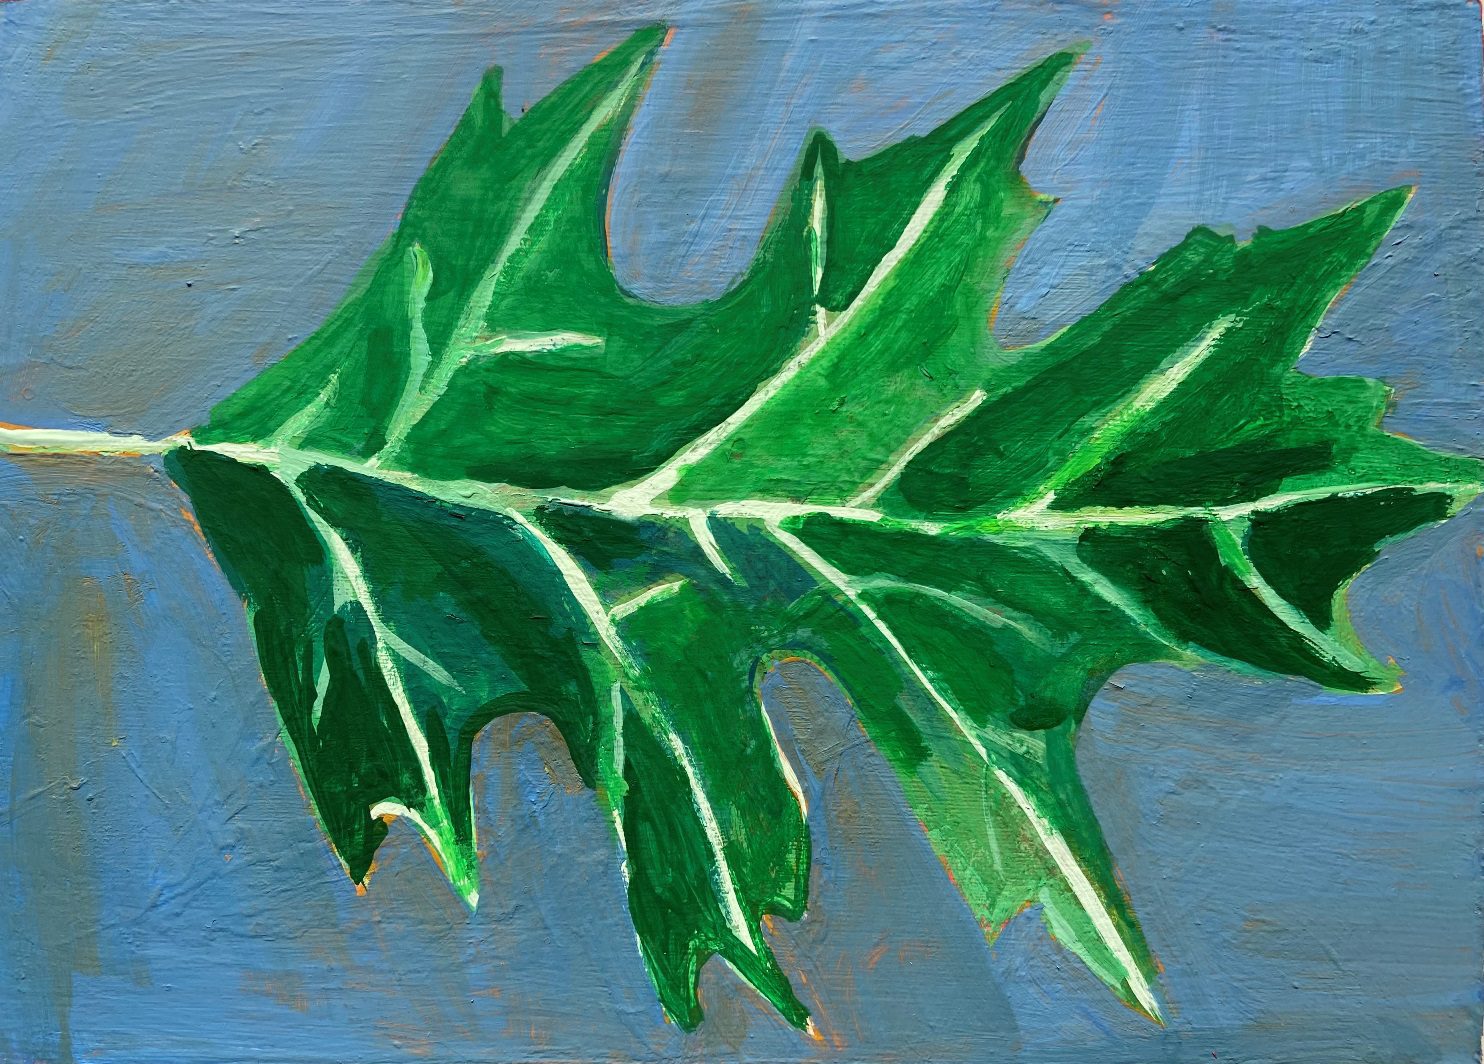 dawna-rose-bur-oak-painted-leaf-abstract-realism-online-gallery